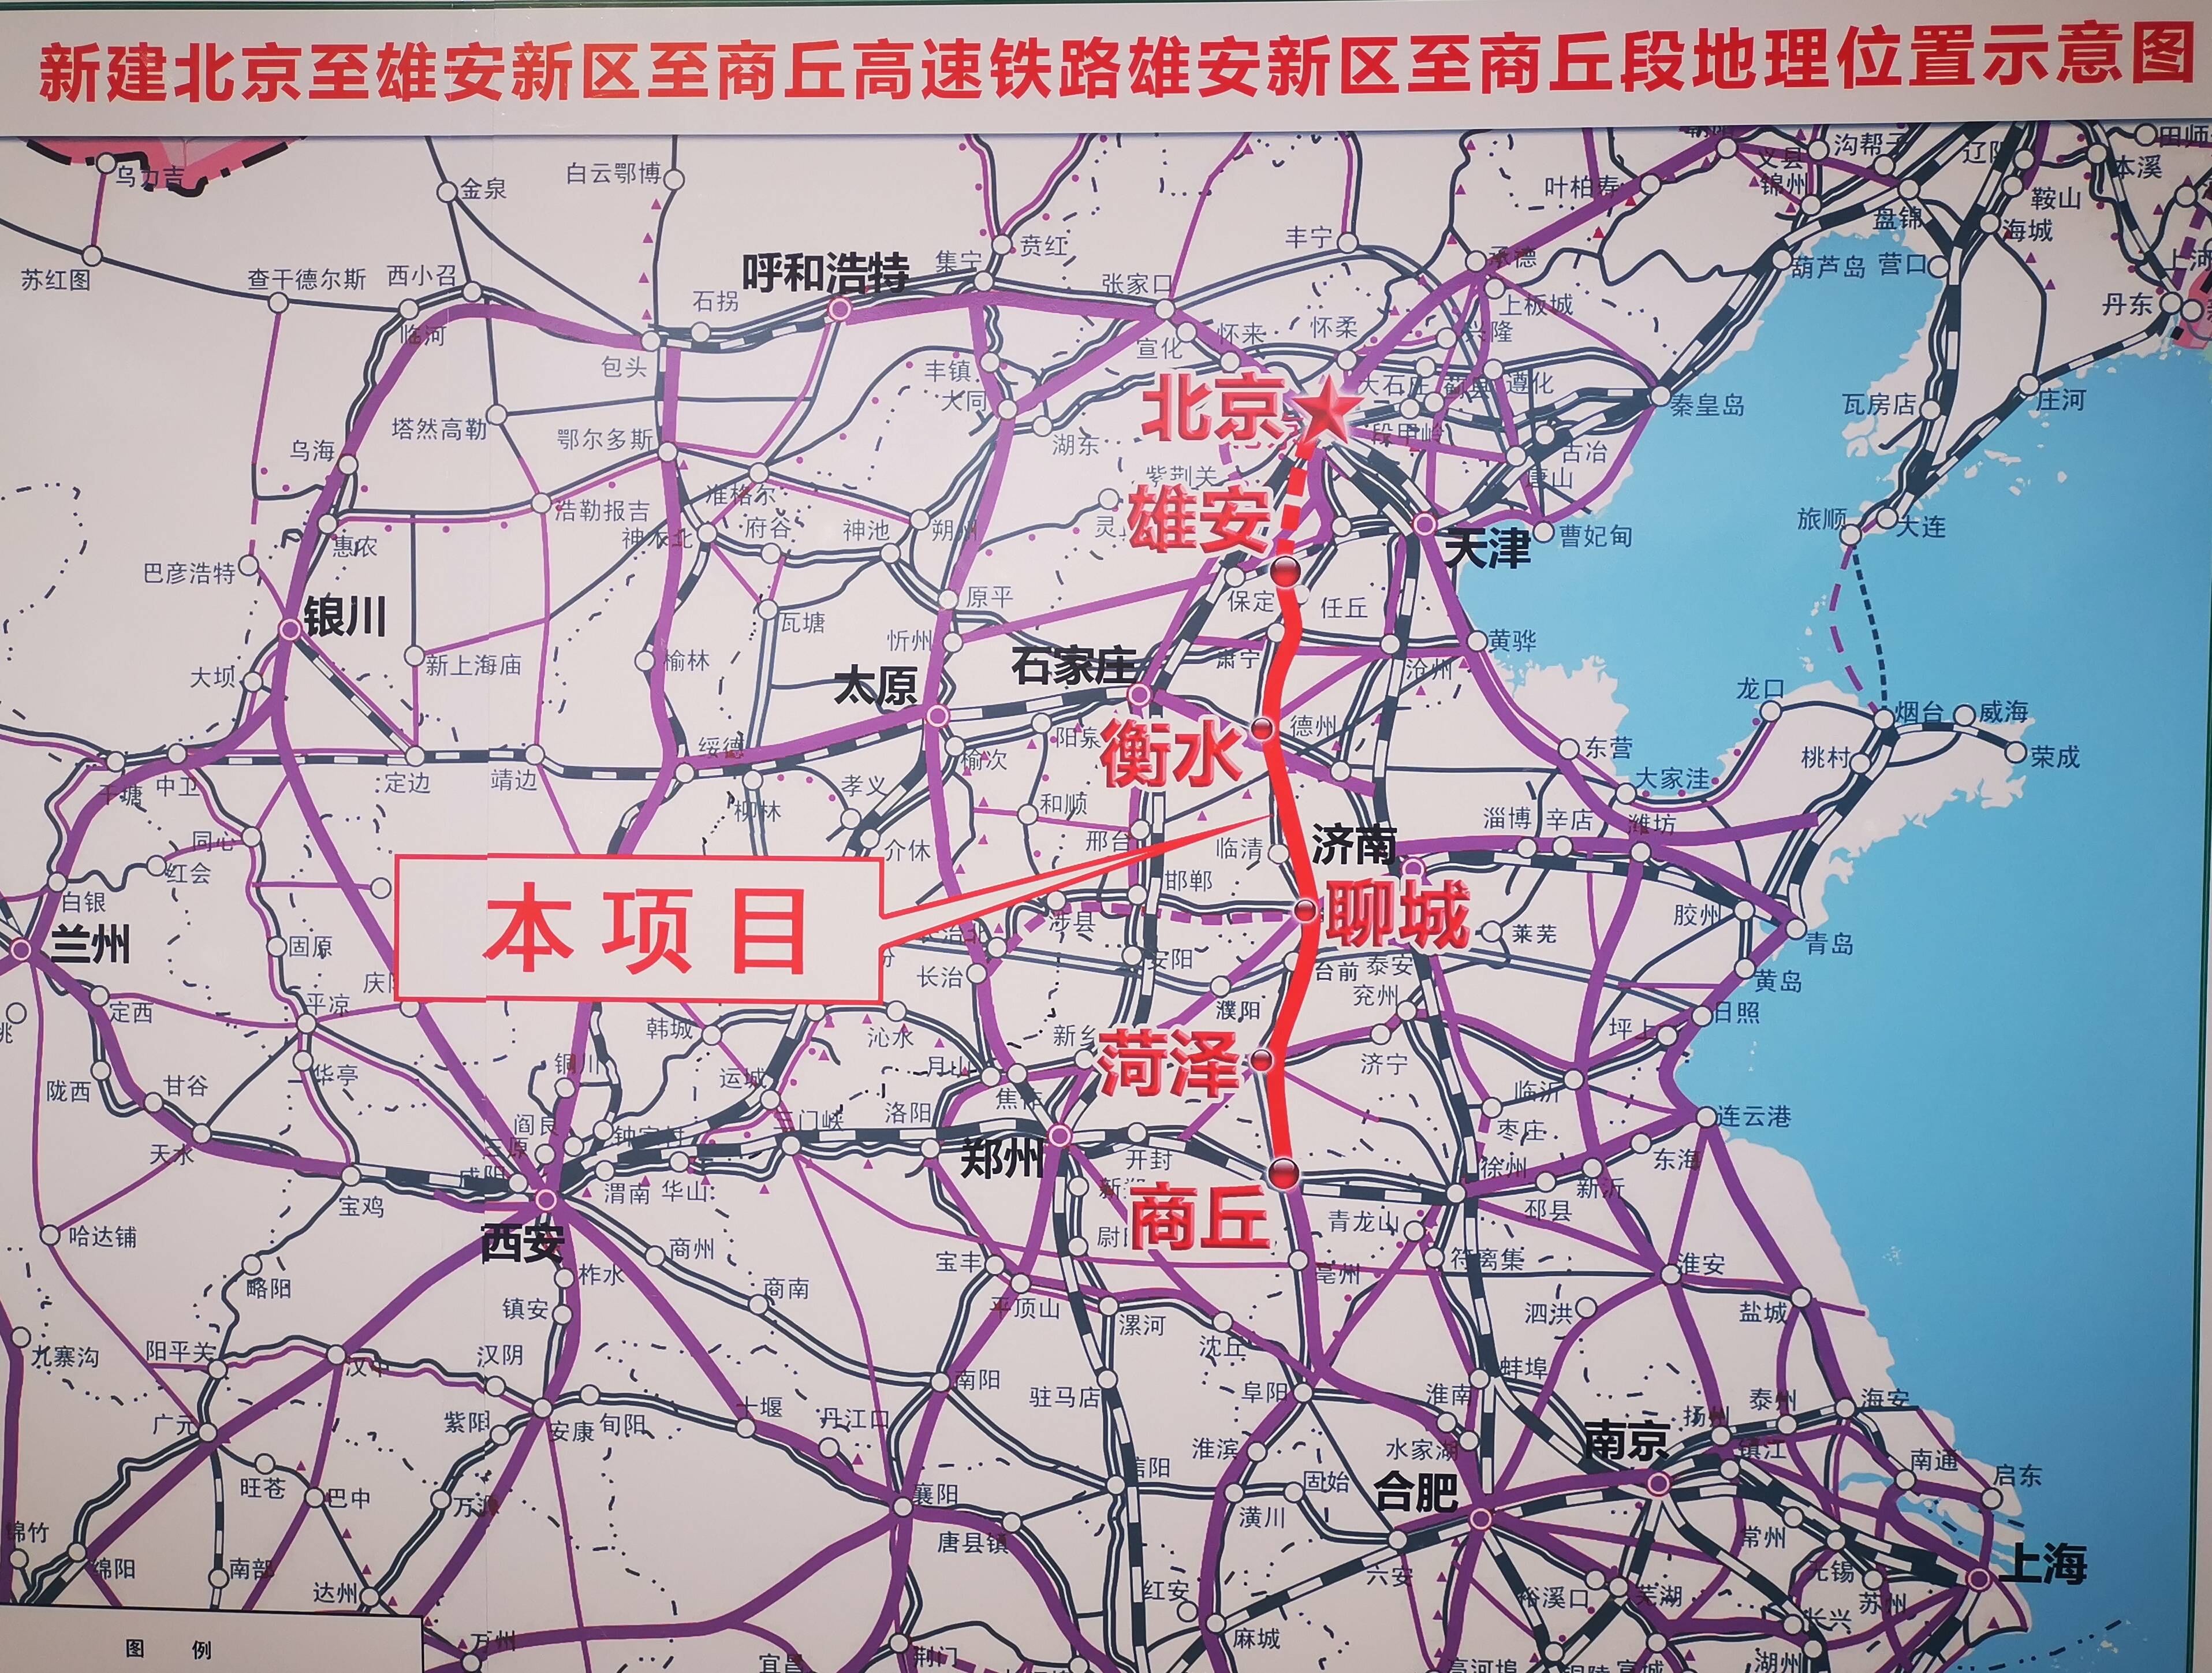 雄商高铁开工建设山东段长269公里  国家八纵八横高速铁路网再添新通道